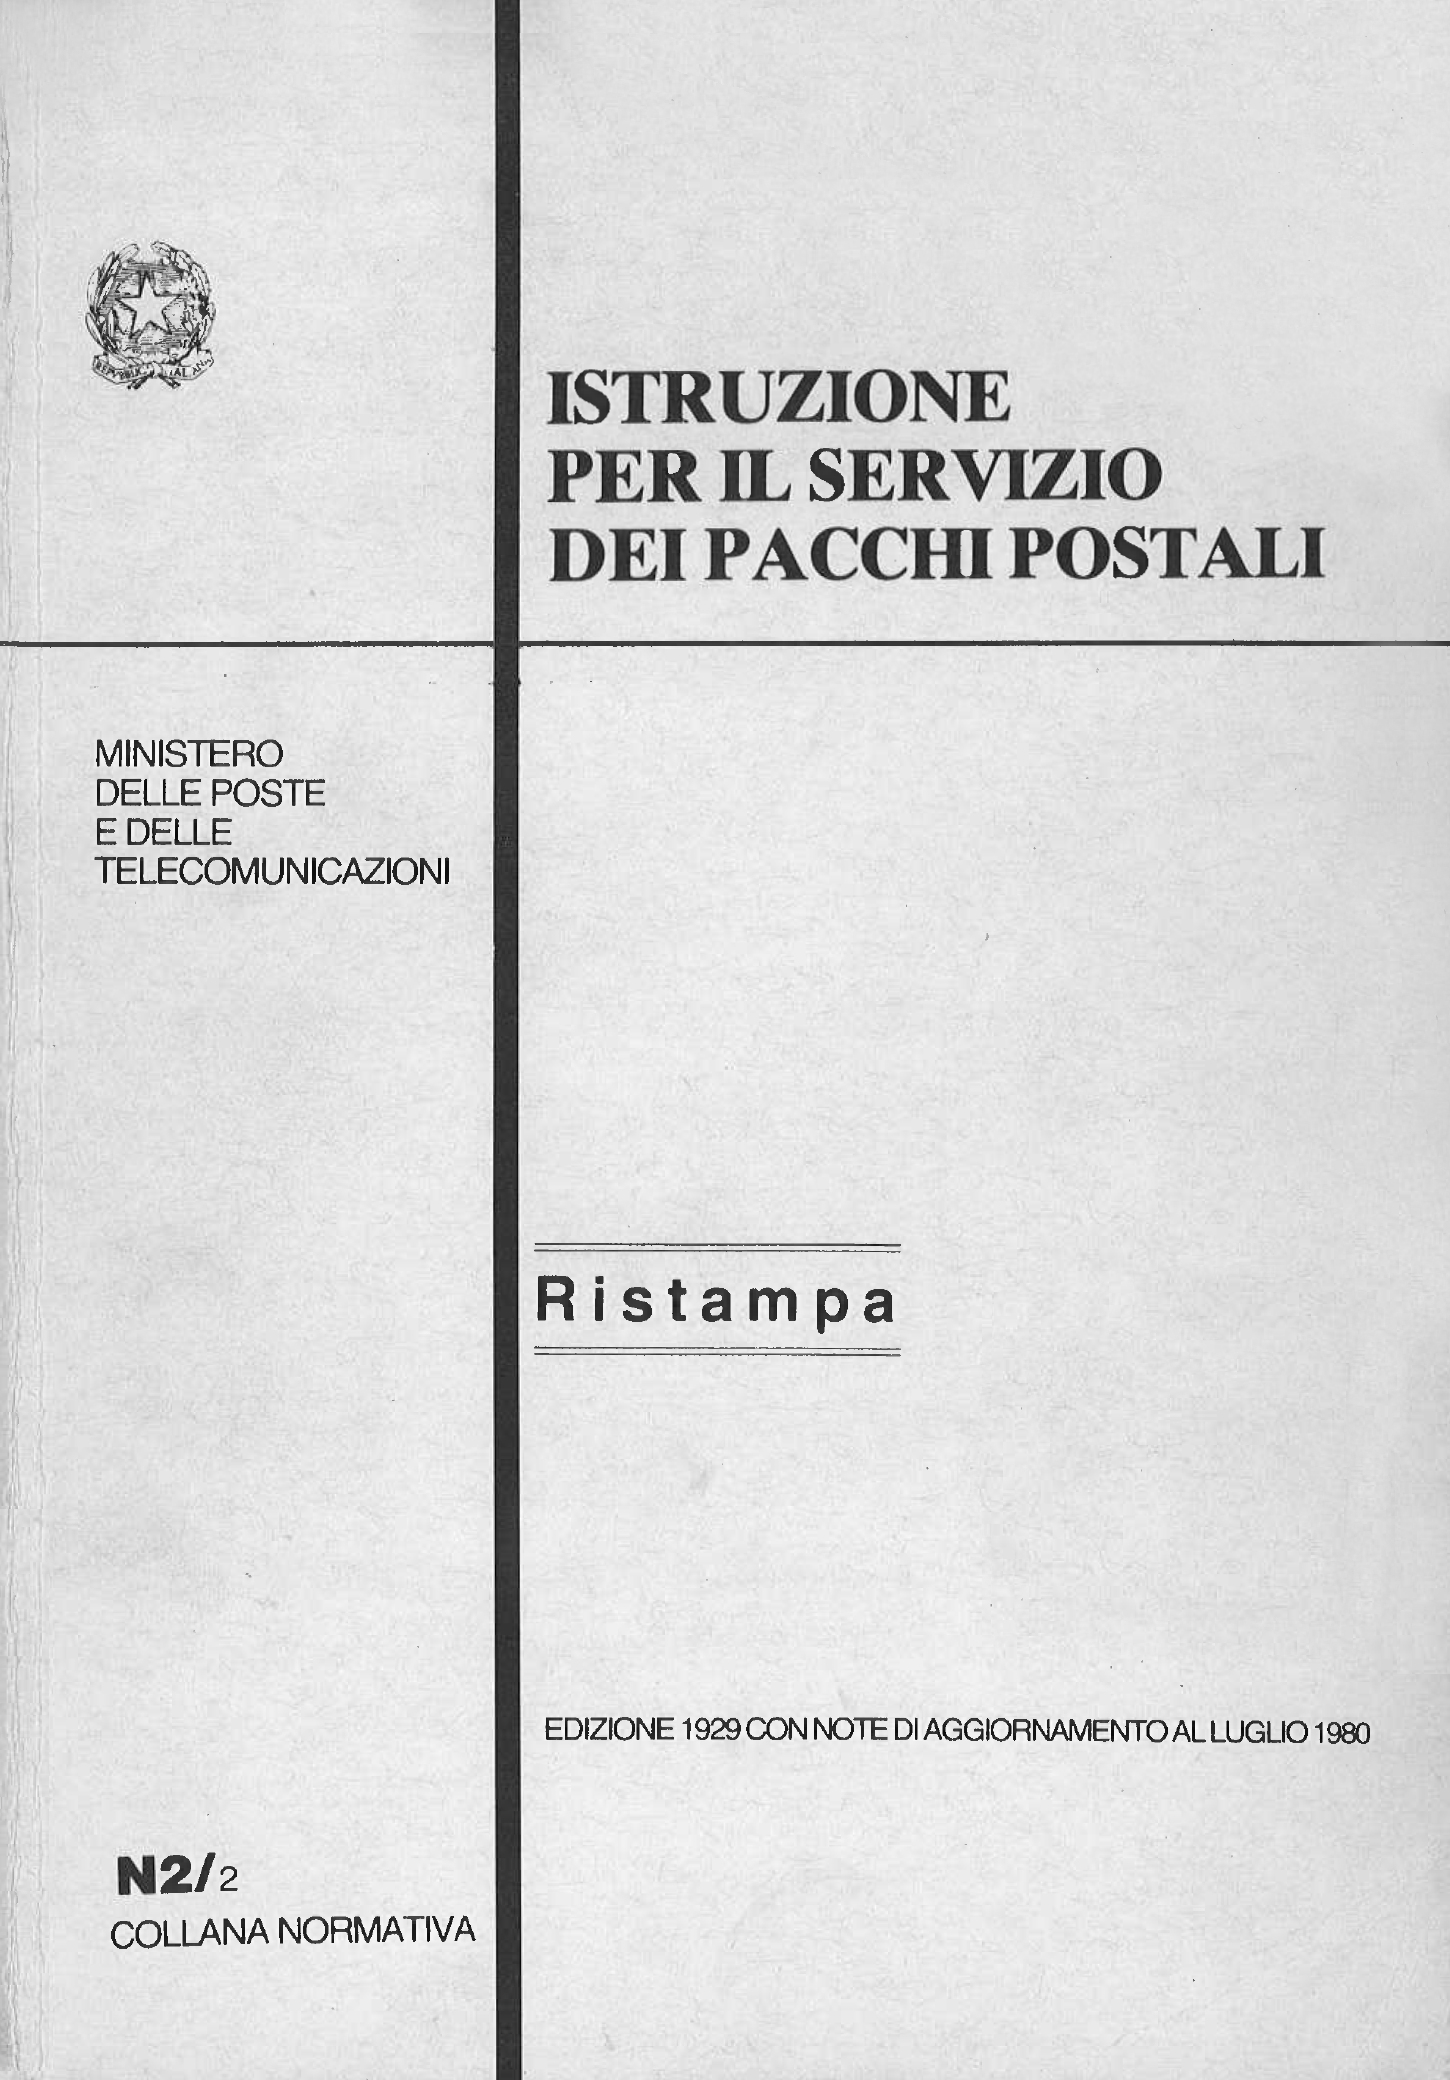 Pubblicazioni non periodiche dell’Amministrazione postale italiana